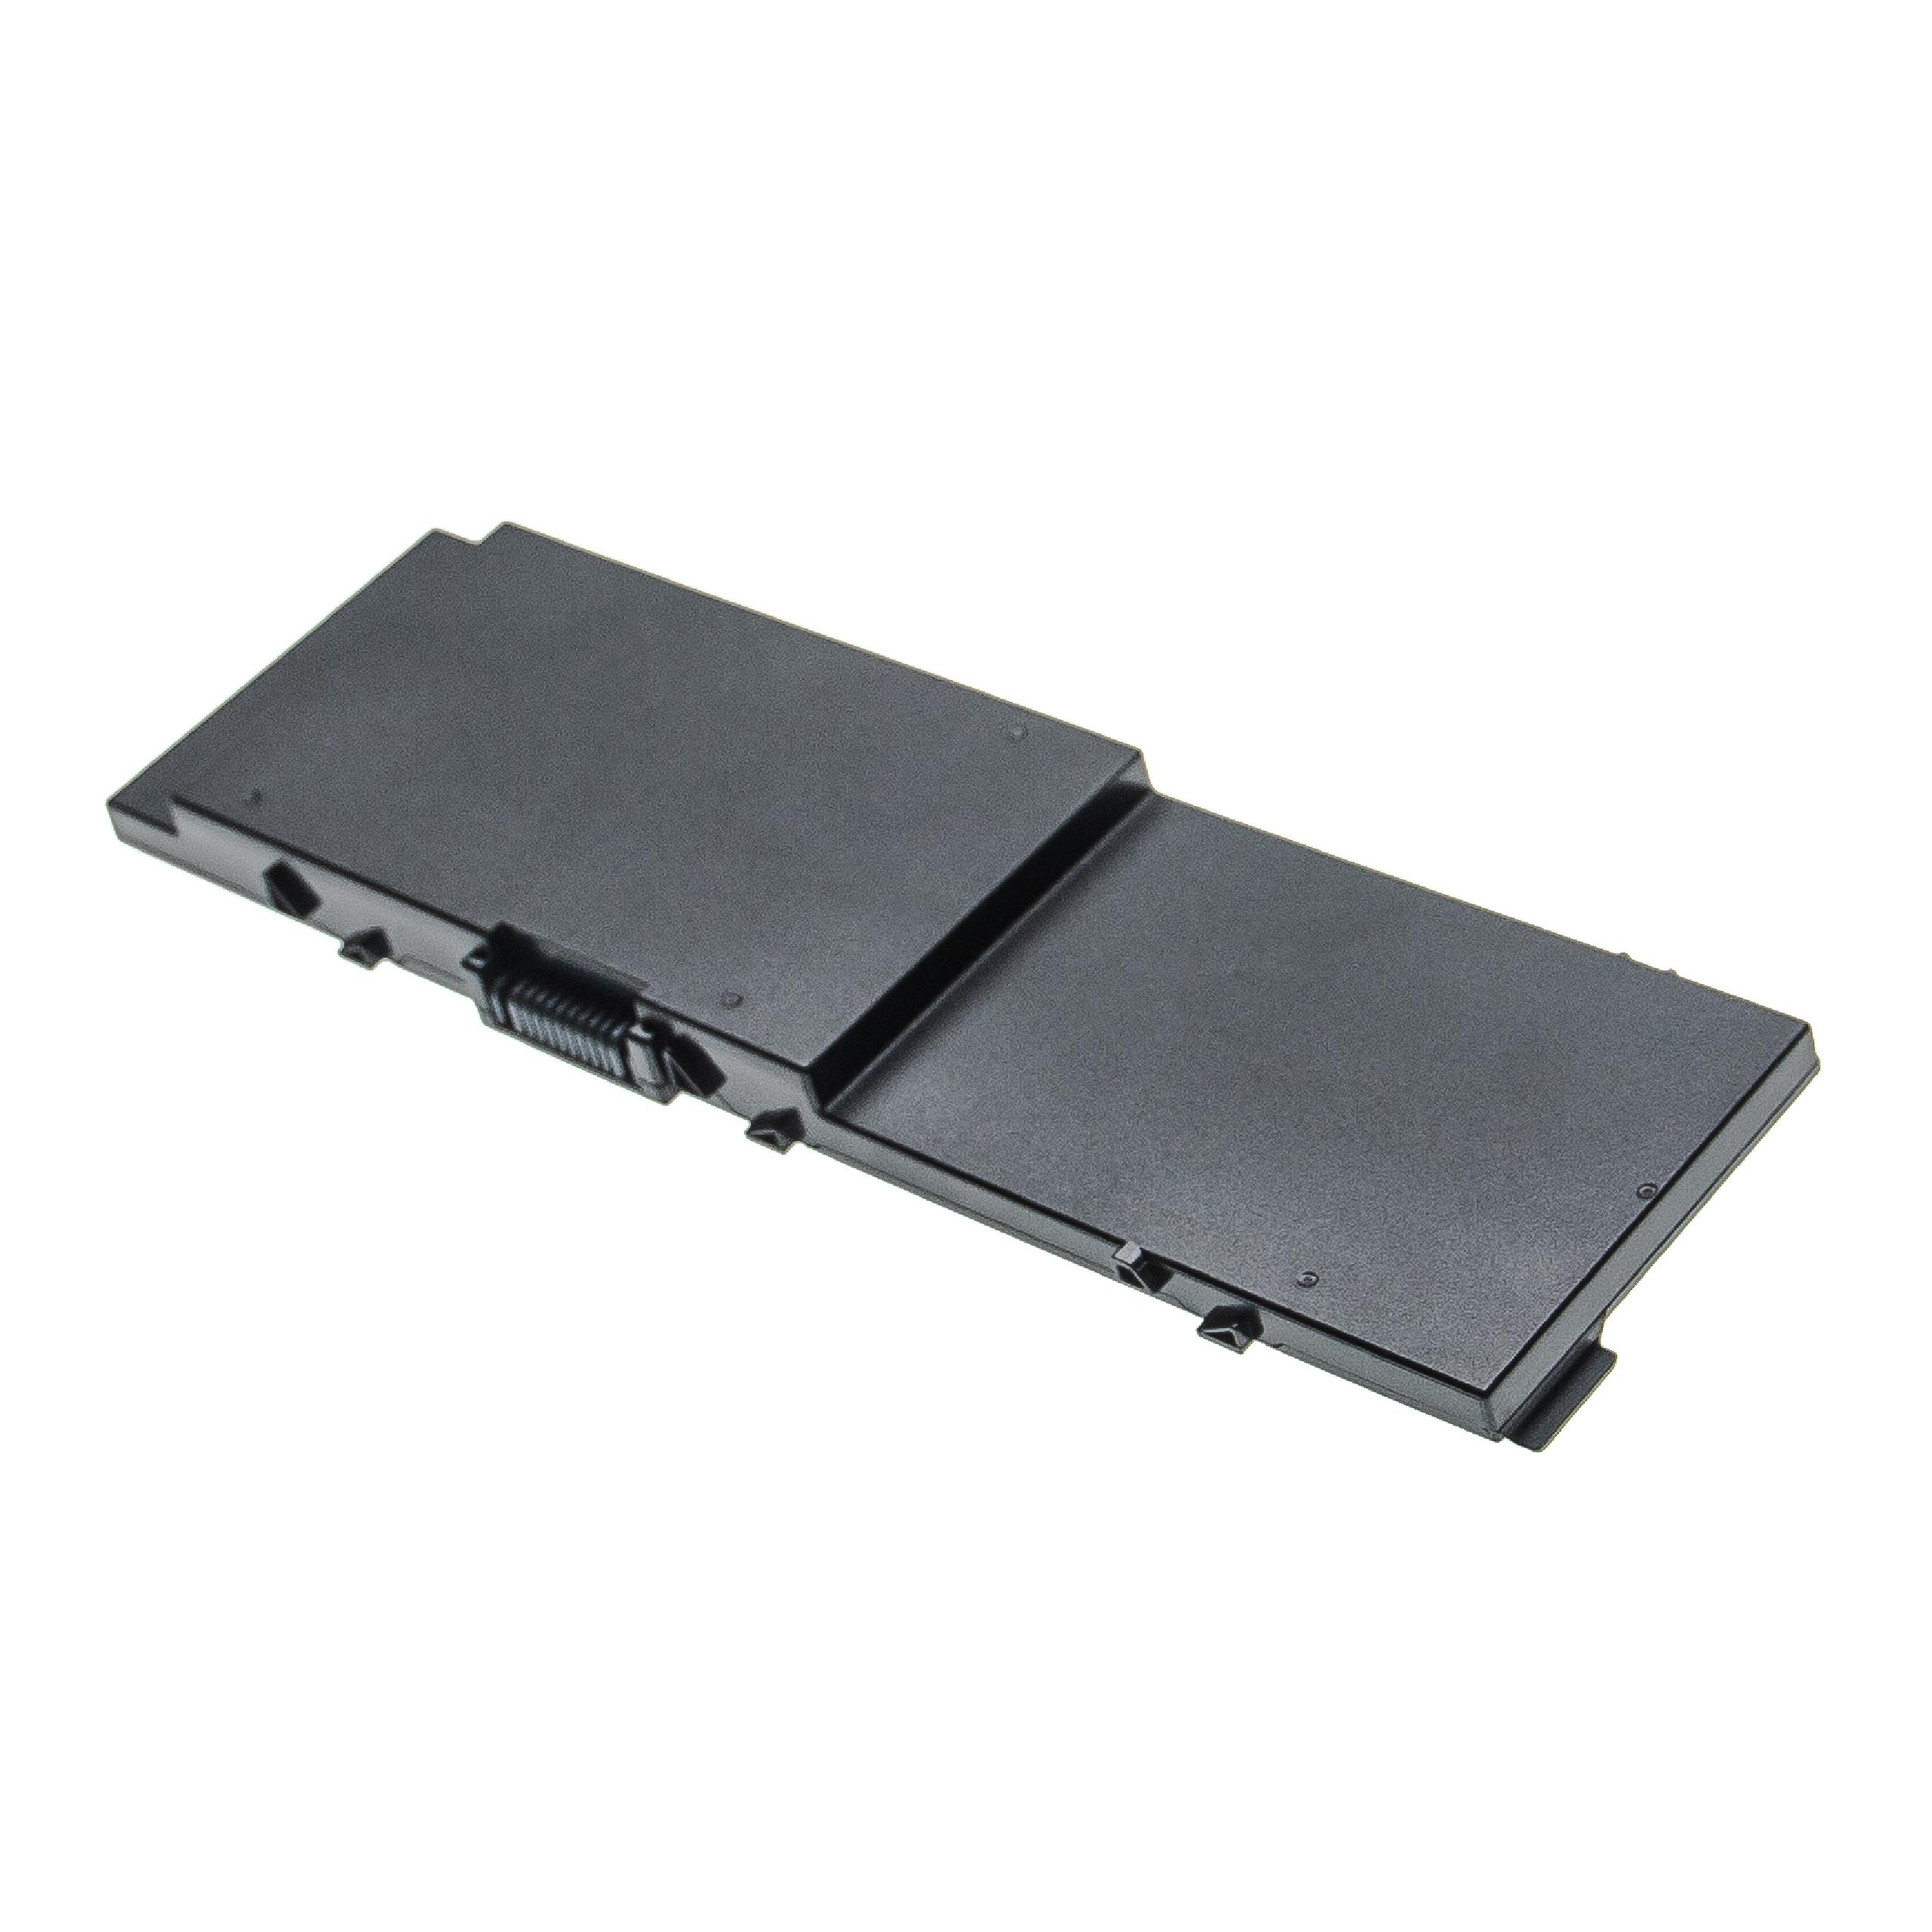 Batterie remplace Dell 0FNY7, 1G9VM, 451-BBSB, 451-BBSE pour ordinateur portable - 7900mAh 11,1V Li-ion, noir